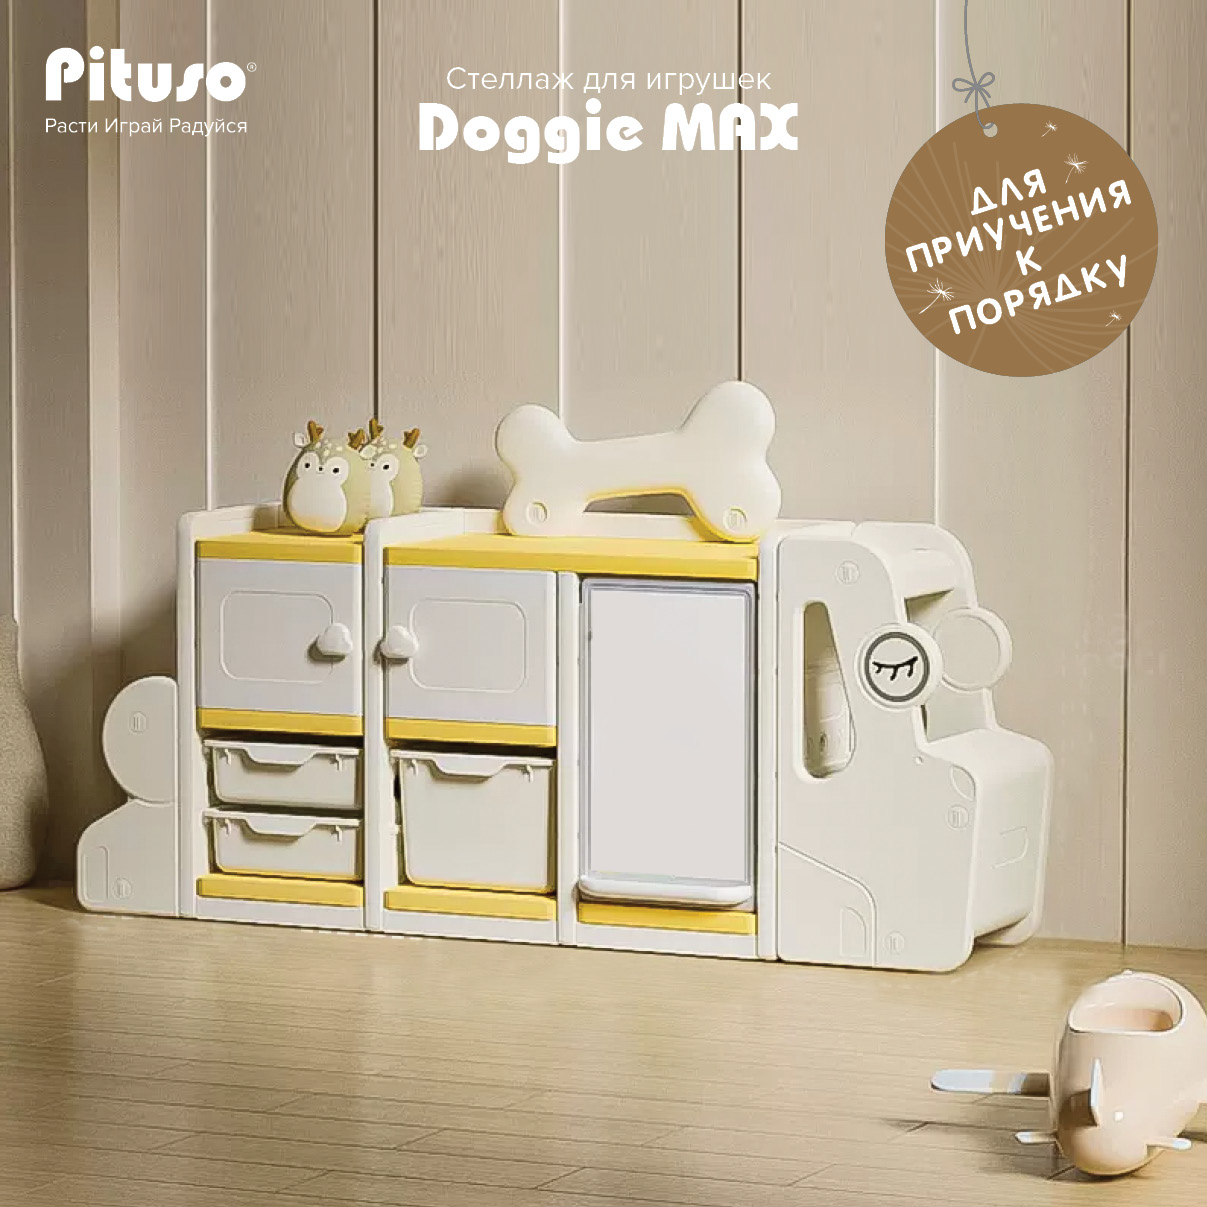 Стеллаж для игрушек с ящиками Pituso Doggie Max, доска для рисования, бежевый, желтый доска для пеленания с пеленкой globex параллель плюс мишка в пижаме бежевый 80х50 см